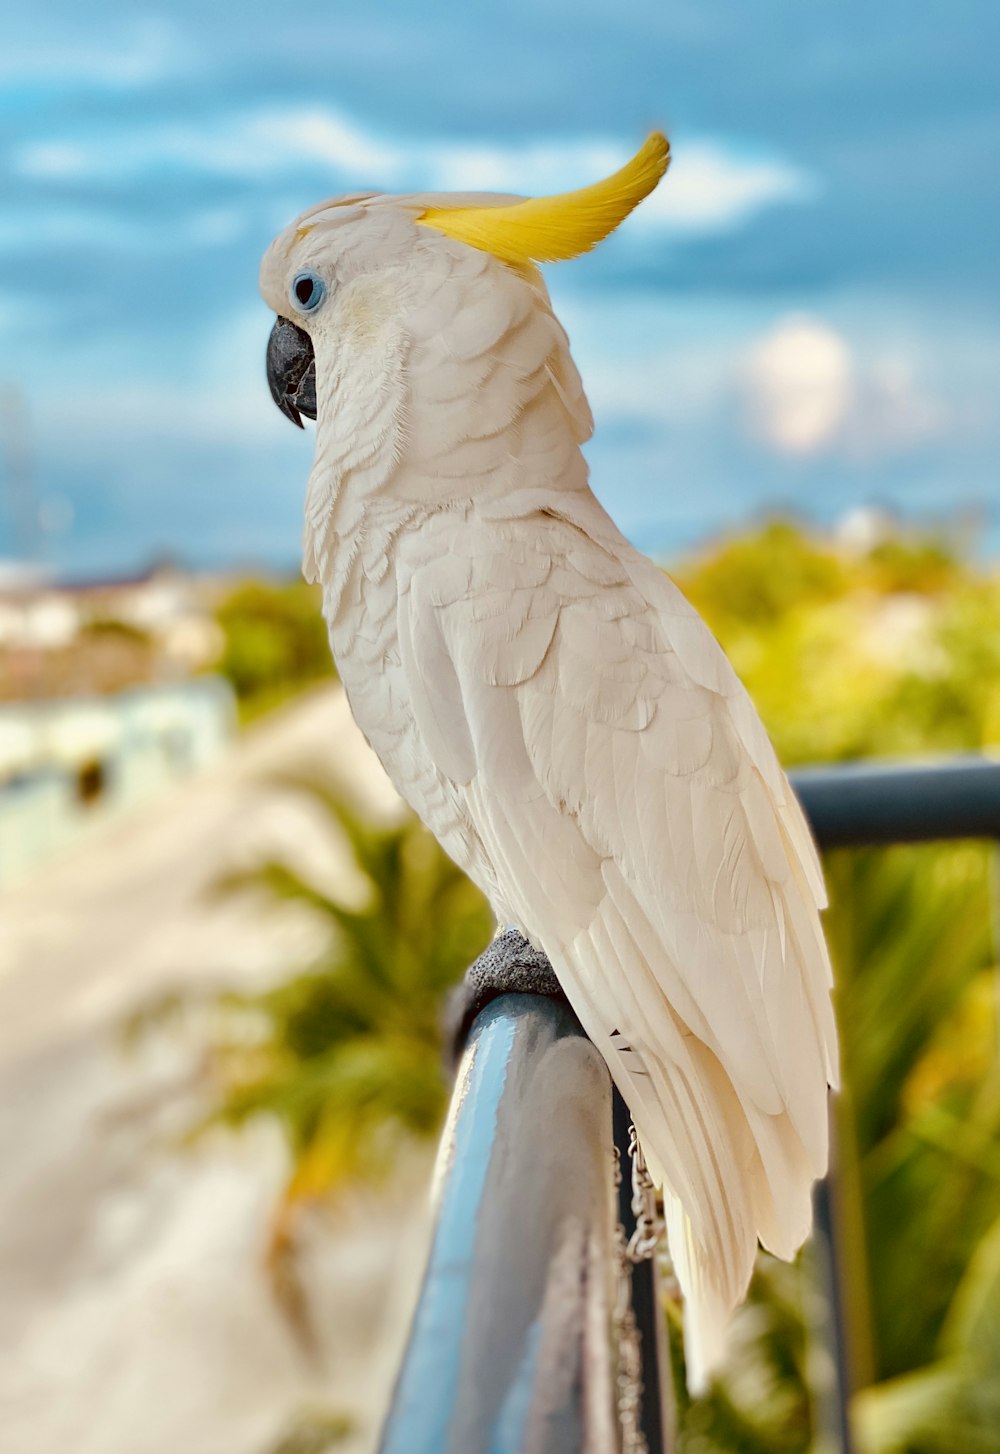 pássaro branco e amarelo na barra de metal preta durante o dia